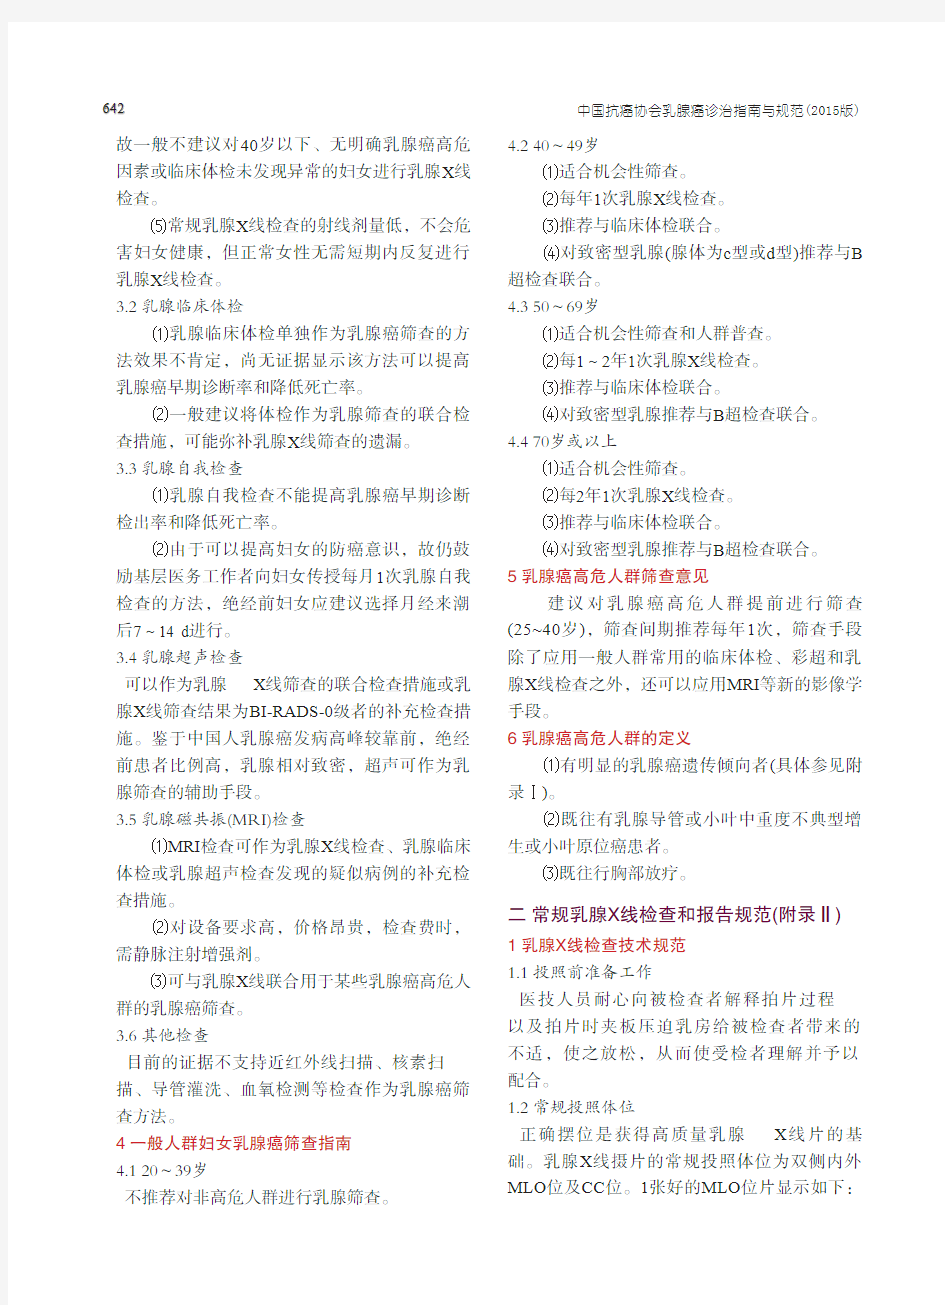 中国抗癌协会乳腺癌诊治指南与规范(2015版)